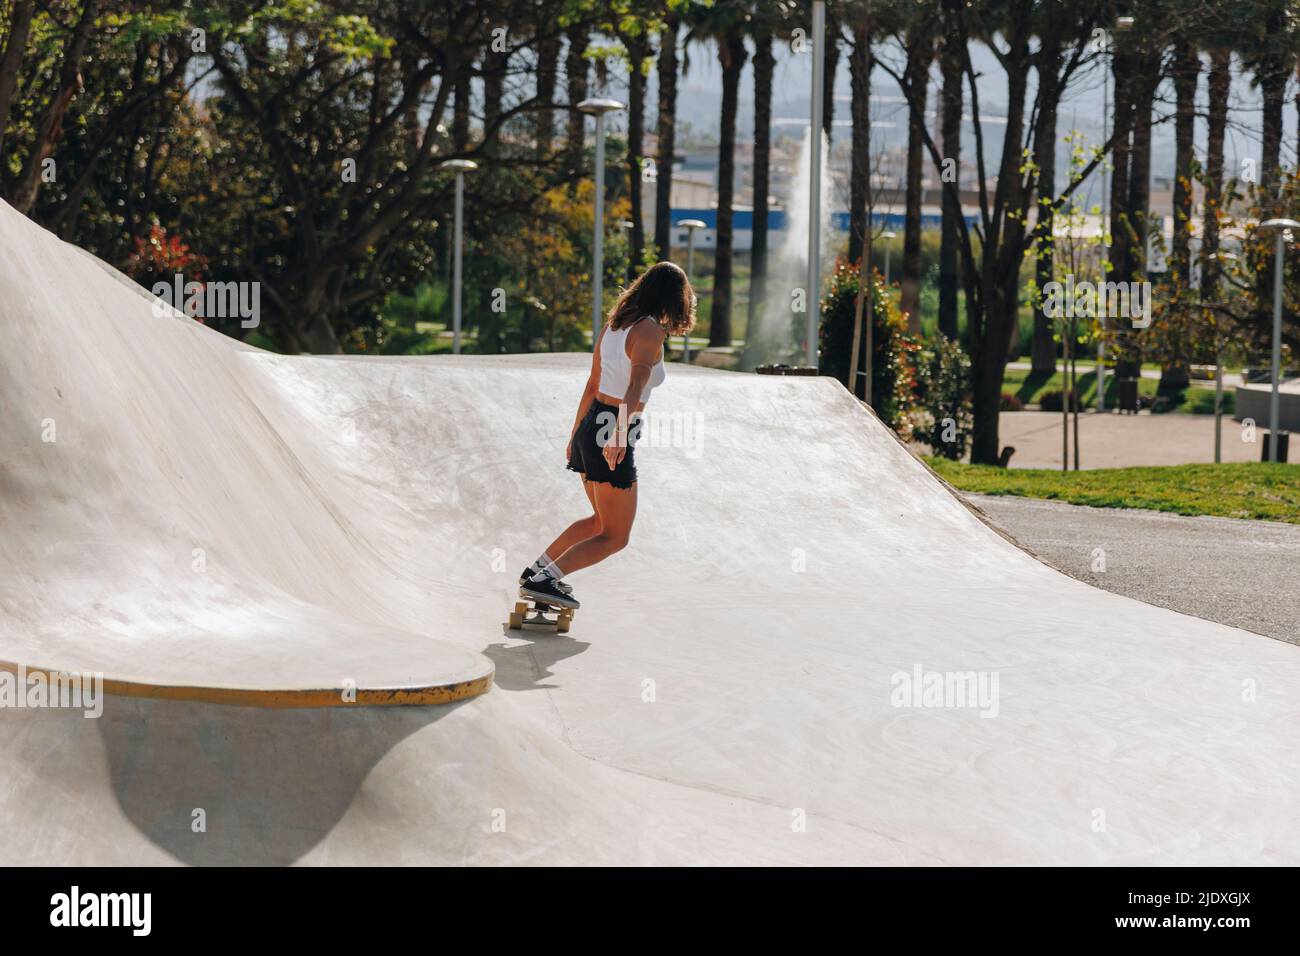 Femme skateboard sur une rampe de sport Banque D'Images